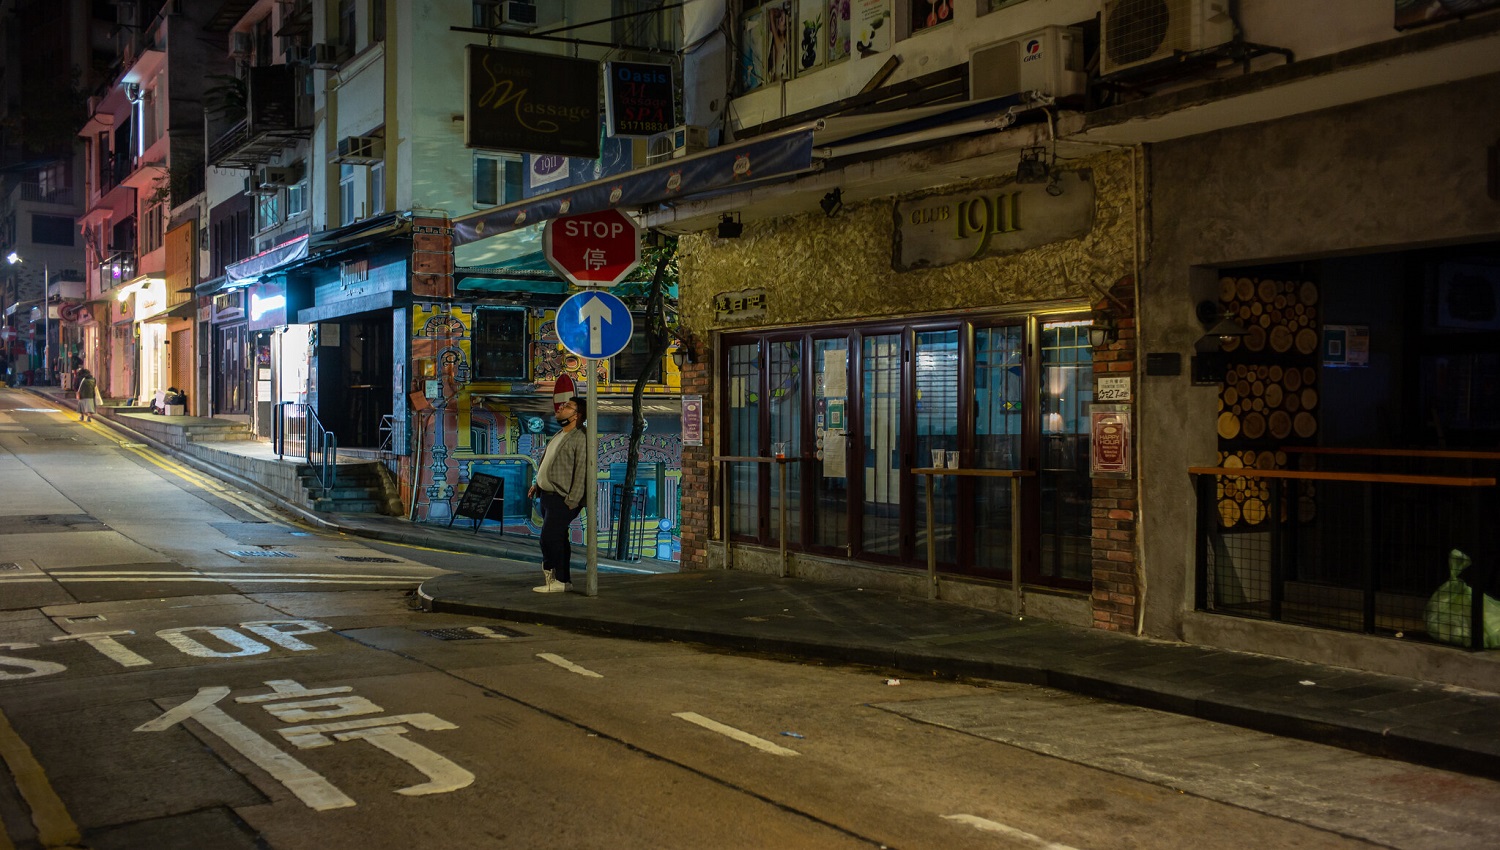 Χονγκ Κονγκ: Χαλαρώνουν οι περιορισμοί για την COVID-19 – Τα μπαρ και οι παμπ θα παραμείνουν κλειστά